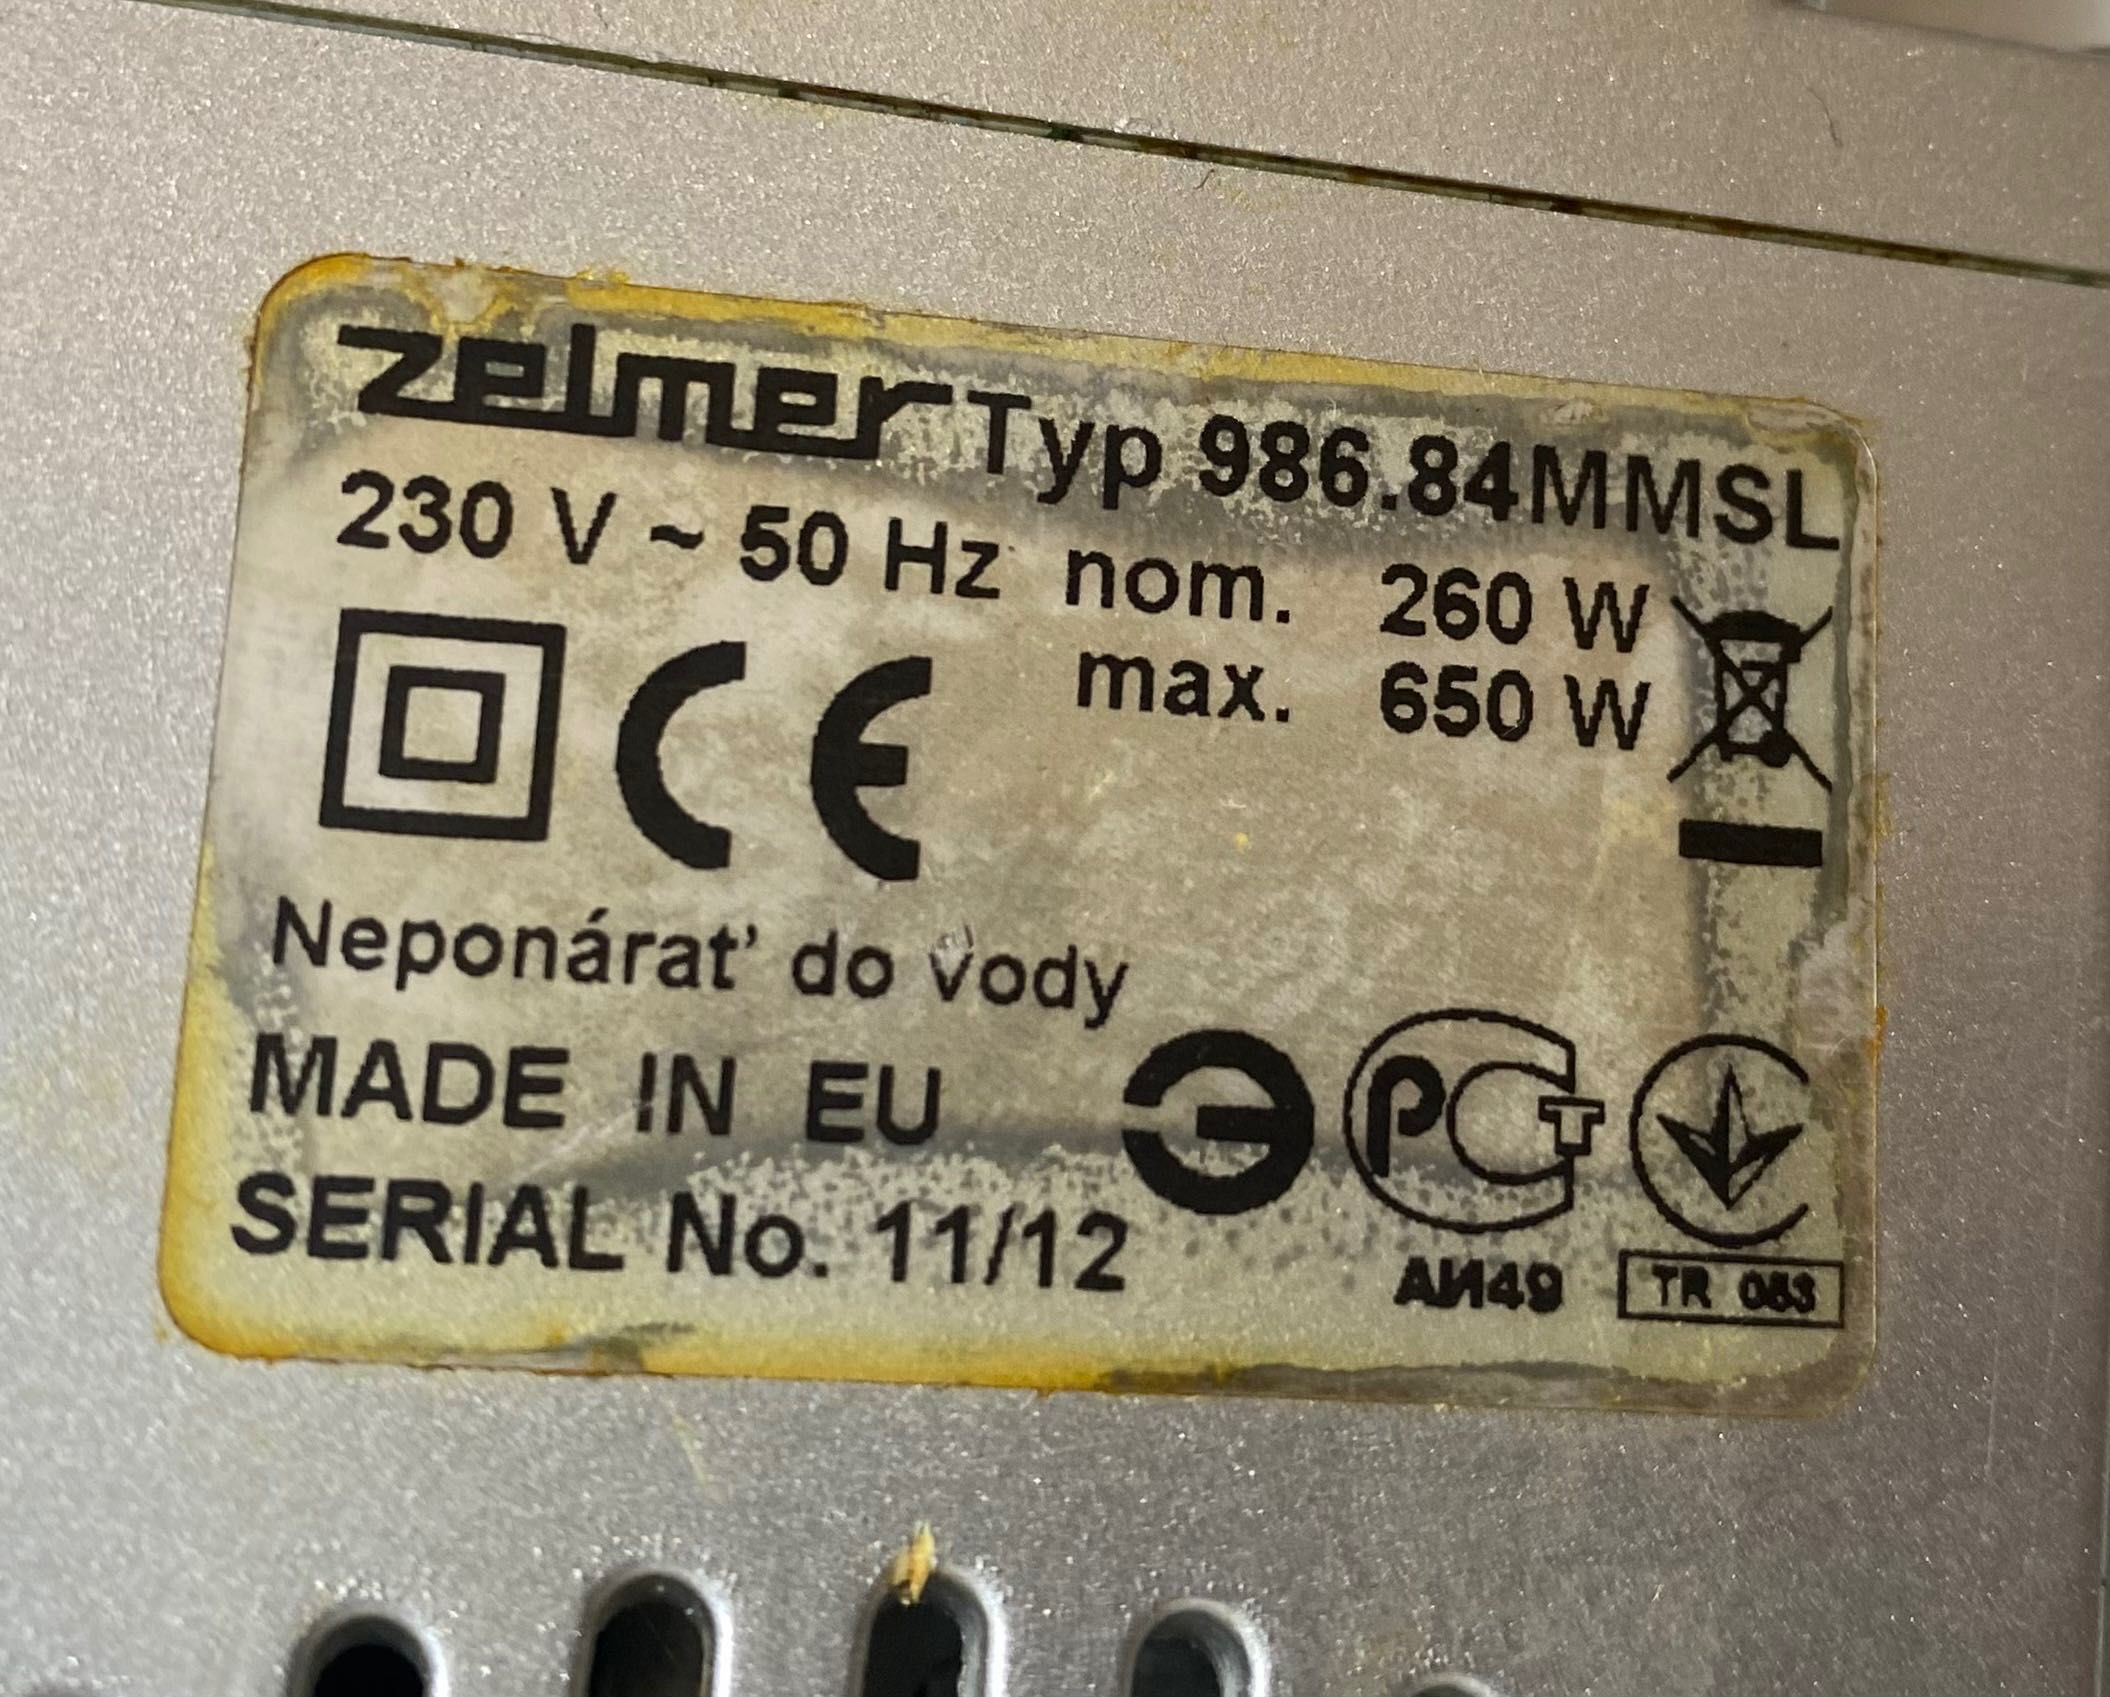 М'ясорубка → Zelmer 986.84 ММ SL на 1.5 кВт. | Made in EU